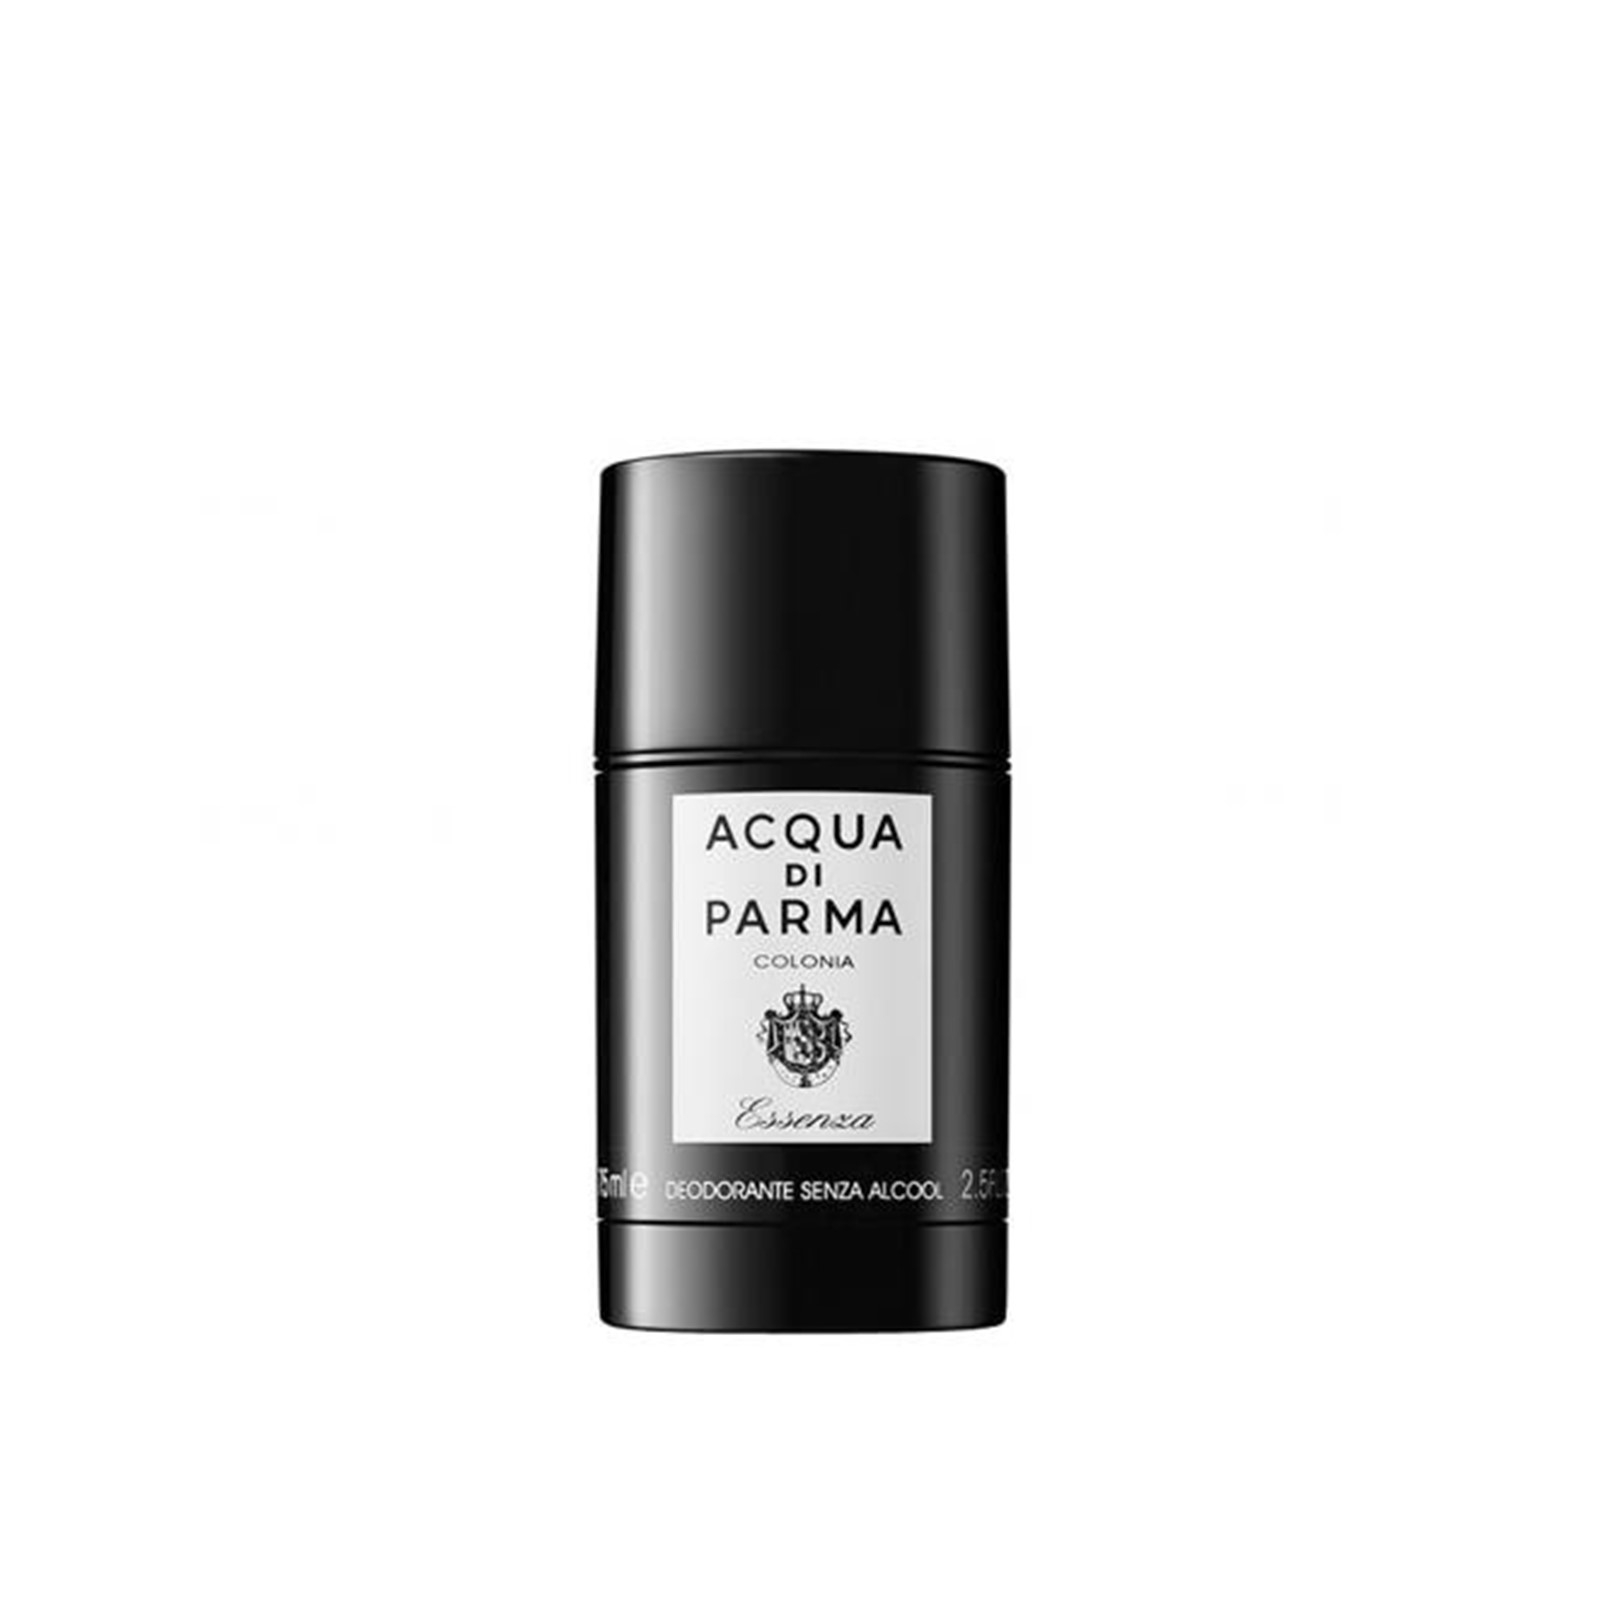 Buy Acqua Di Parma Colonia Deodorant 75ml fl oz) · USA